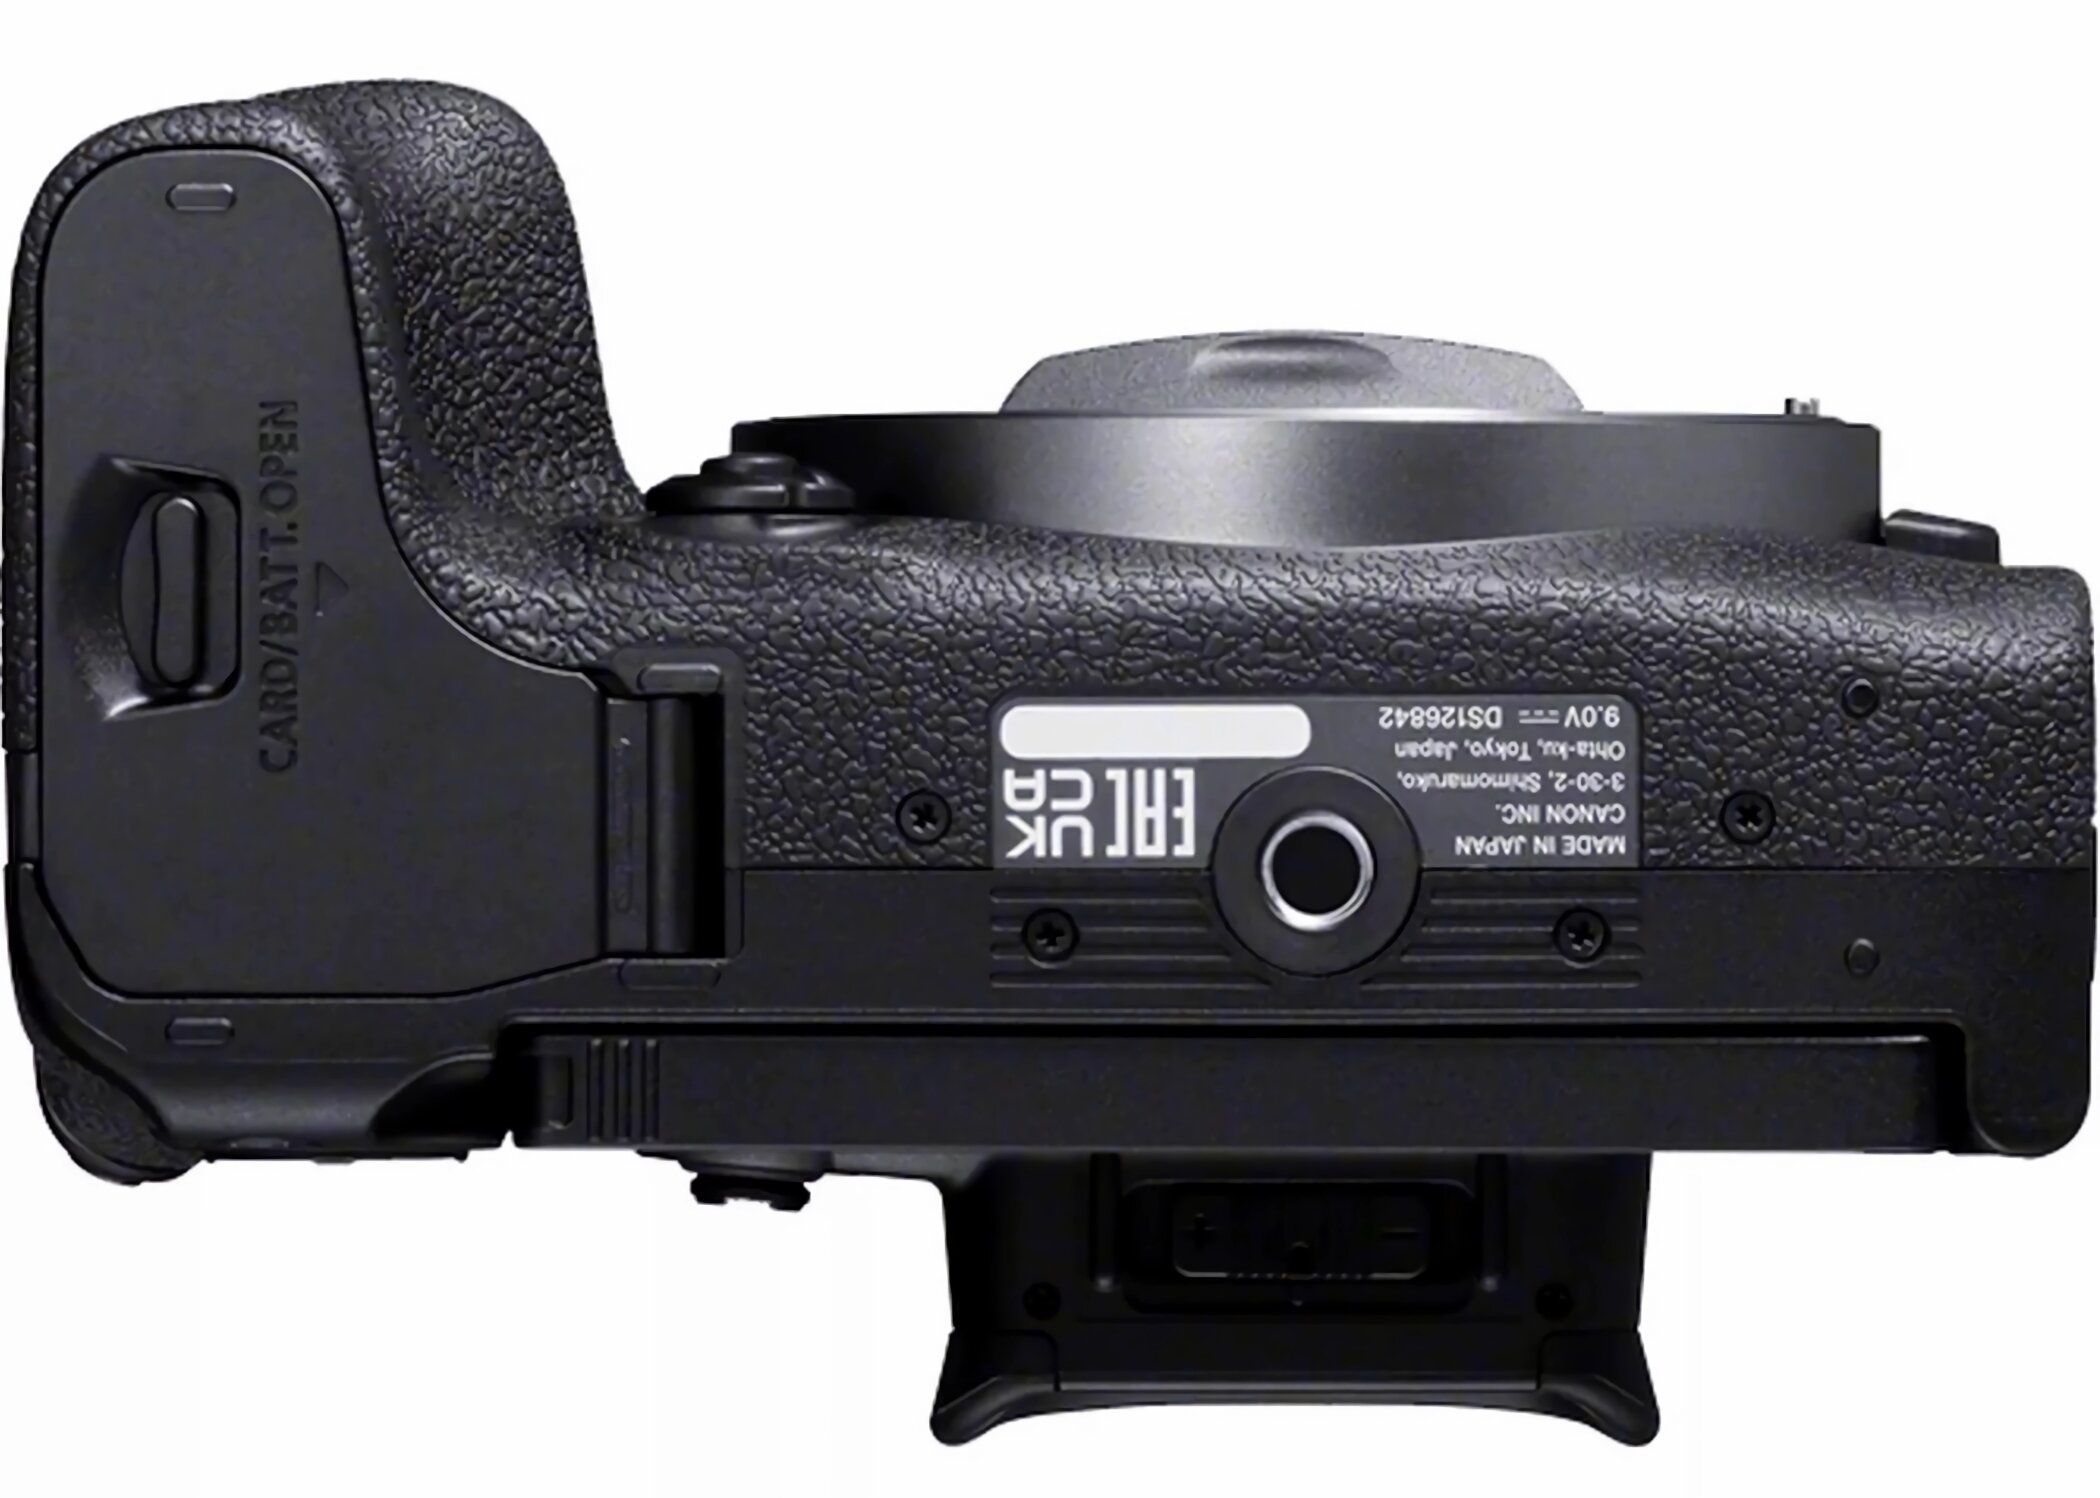 Canon EOS R5 body - Aparaty cyfrowe - Foto - Sklep internetowy